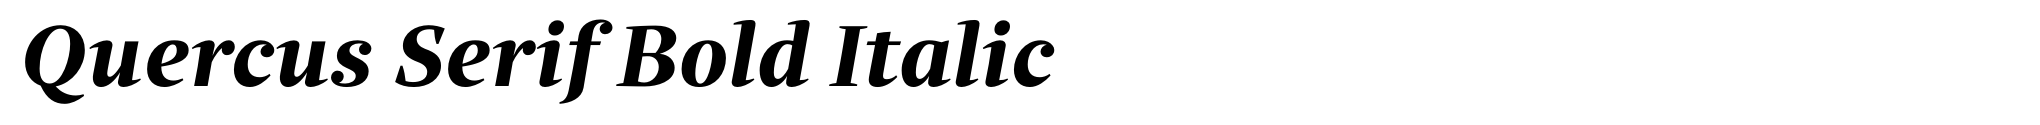 Quercus Serif Bold Italic image